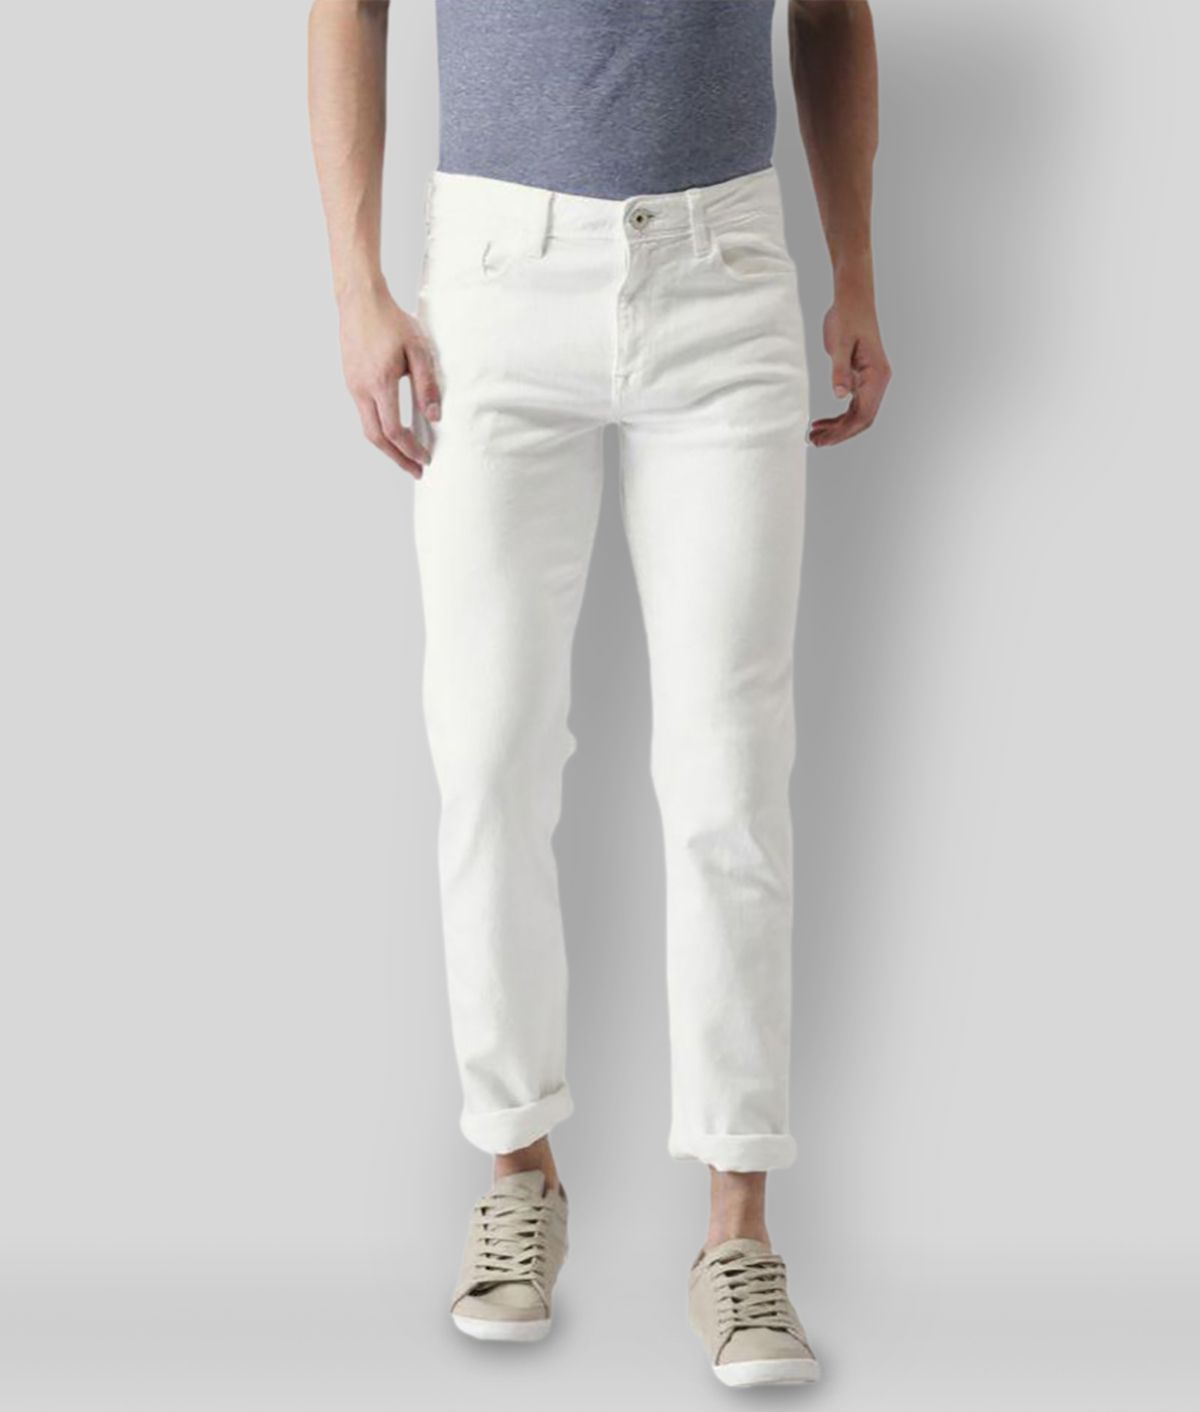     			HALOGEN - White Denim Skinny Men's Jeans ( Pack of 1 )